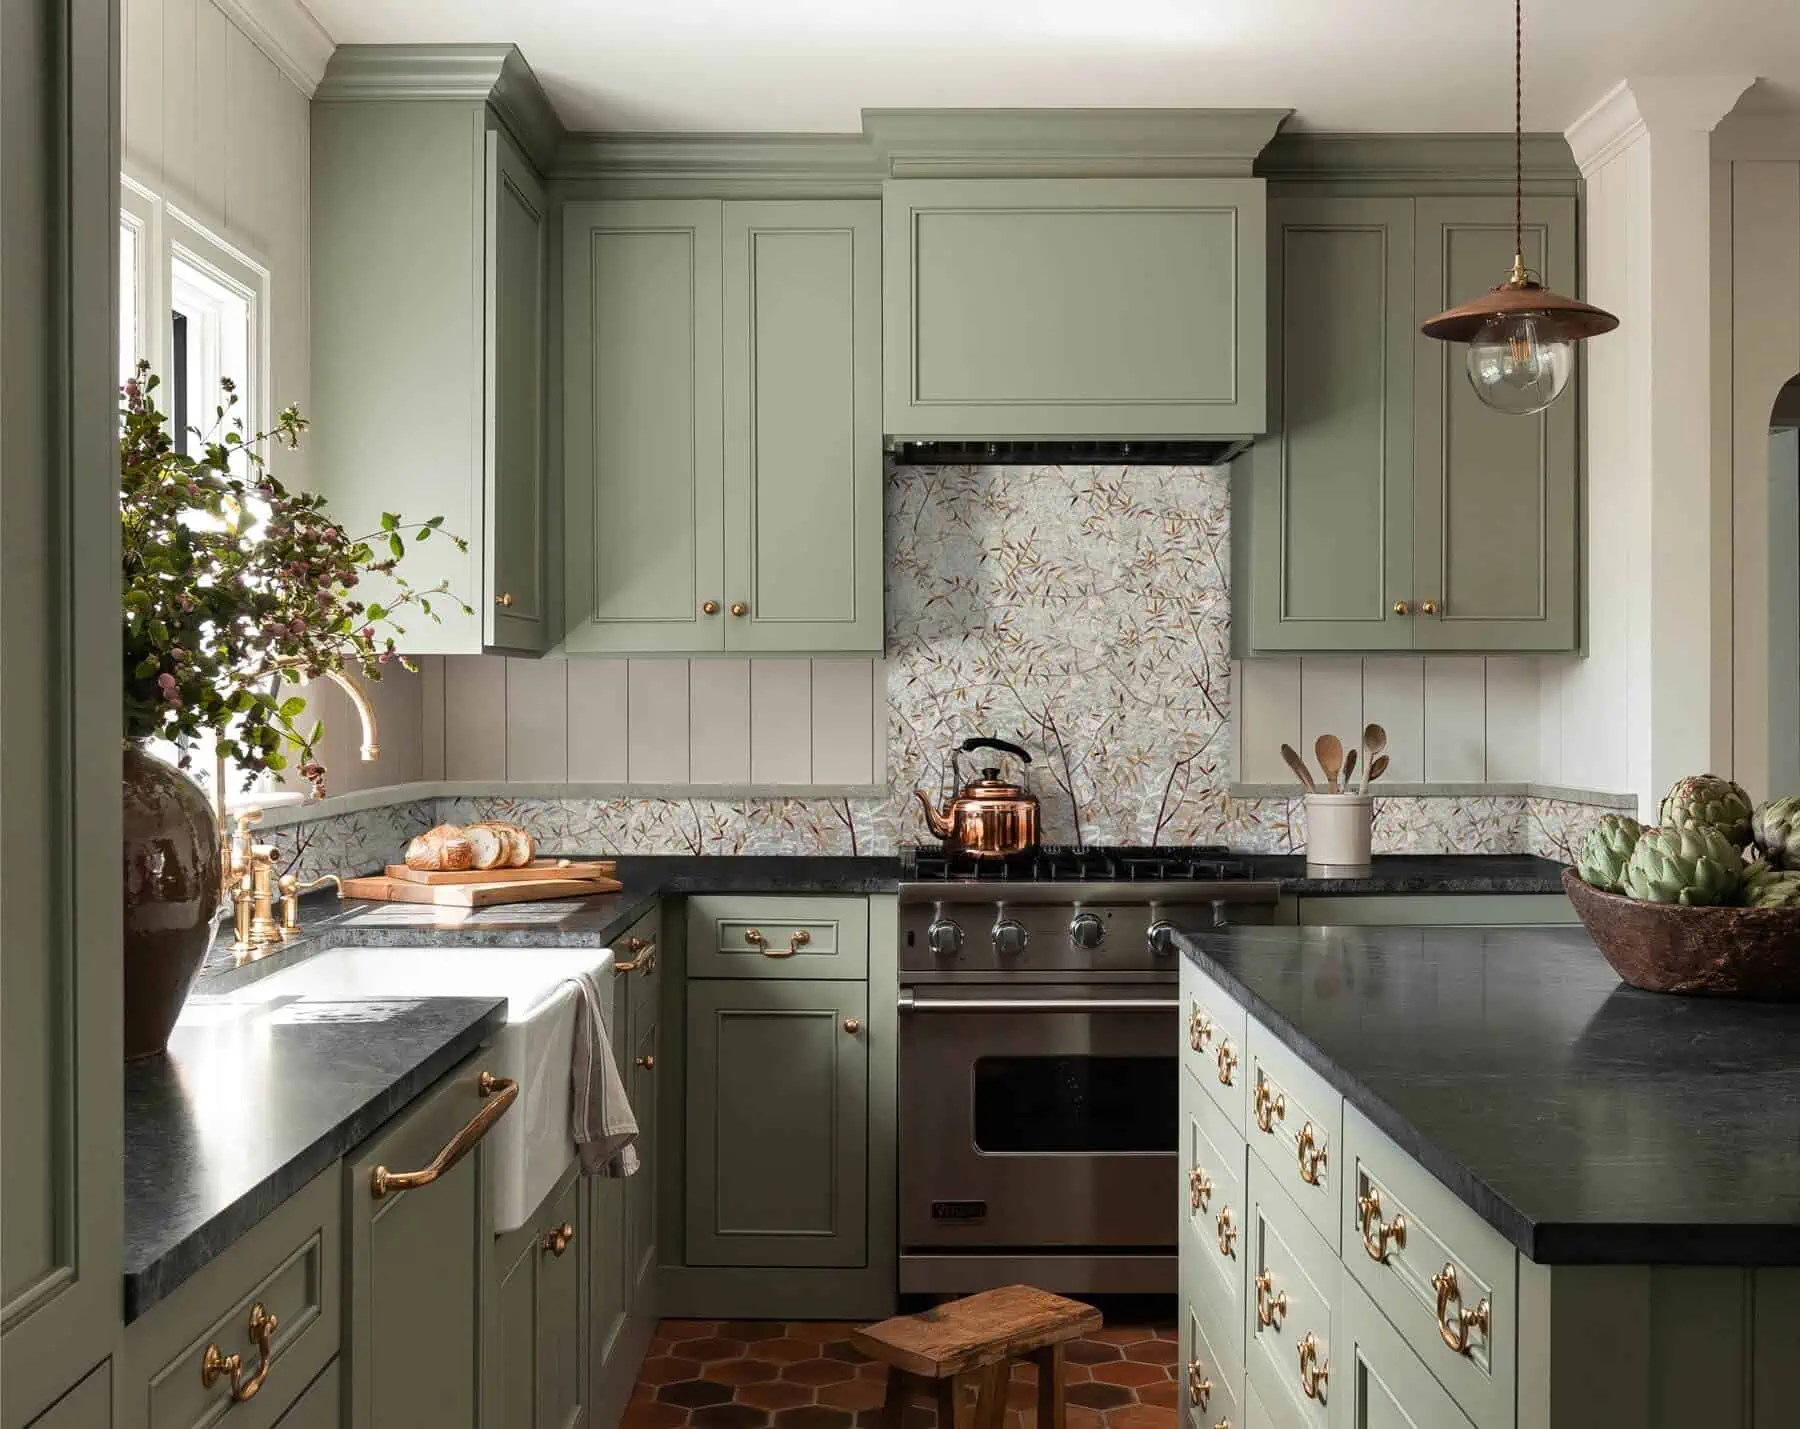 image of a mosaic tile kitchen backsplash green theme blog title leaf art